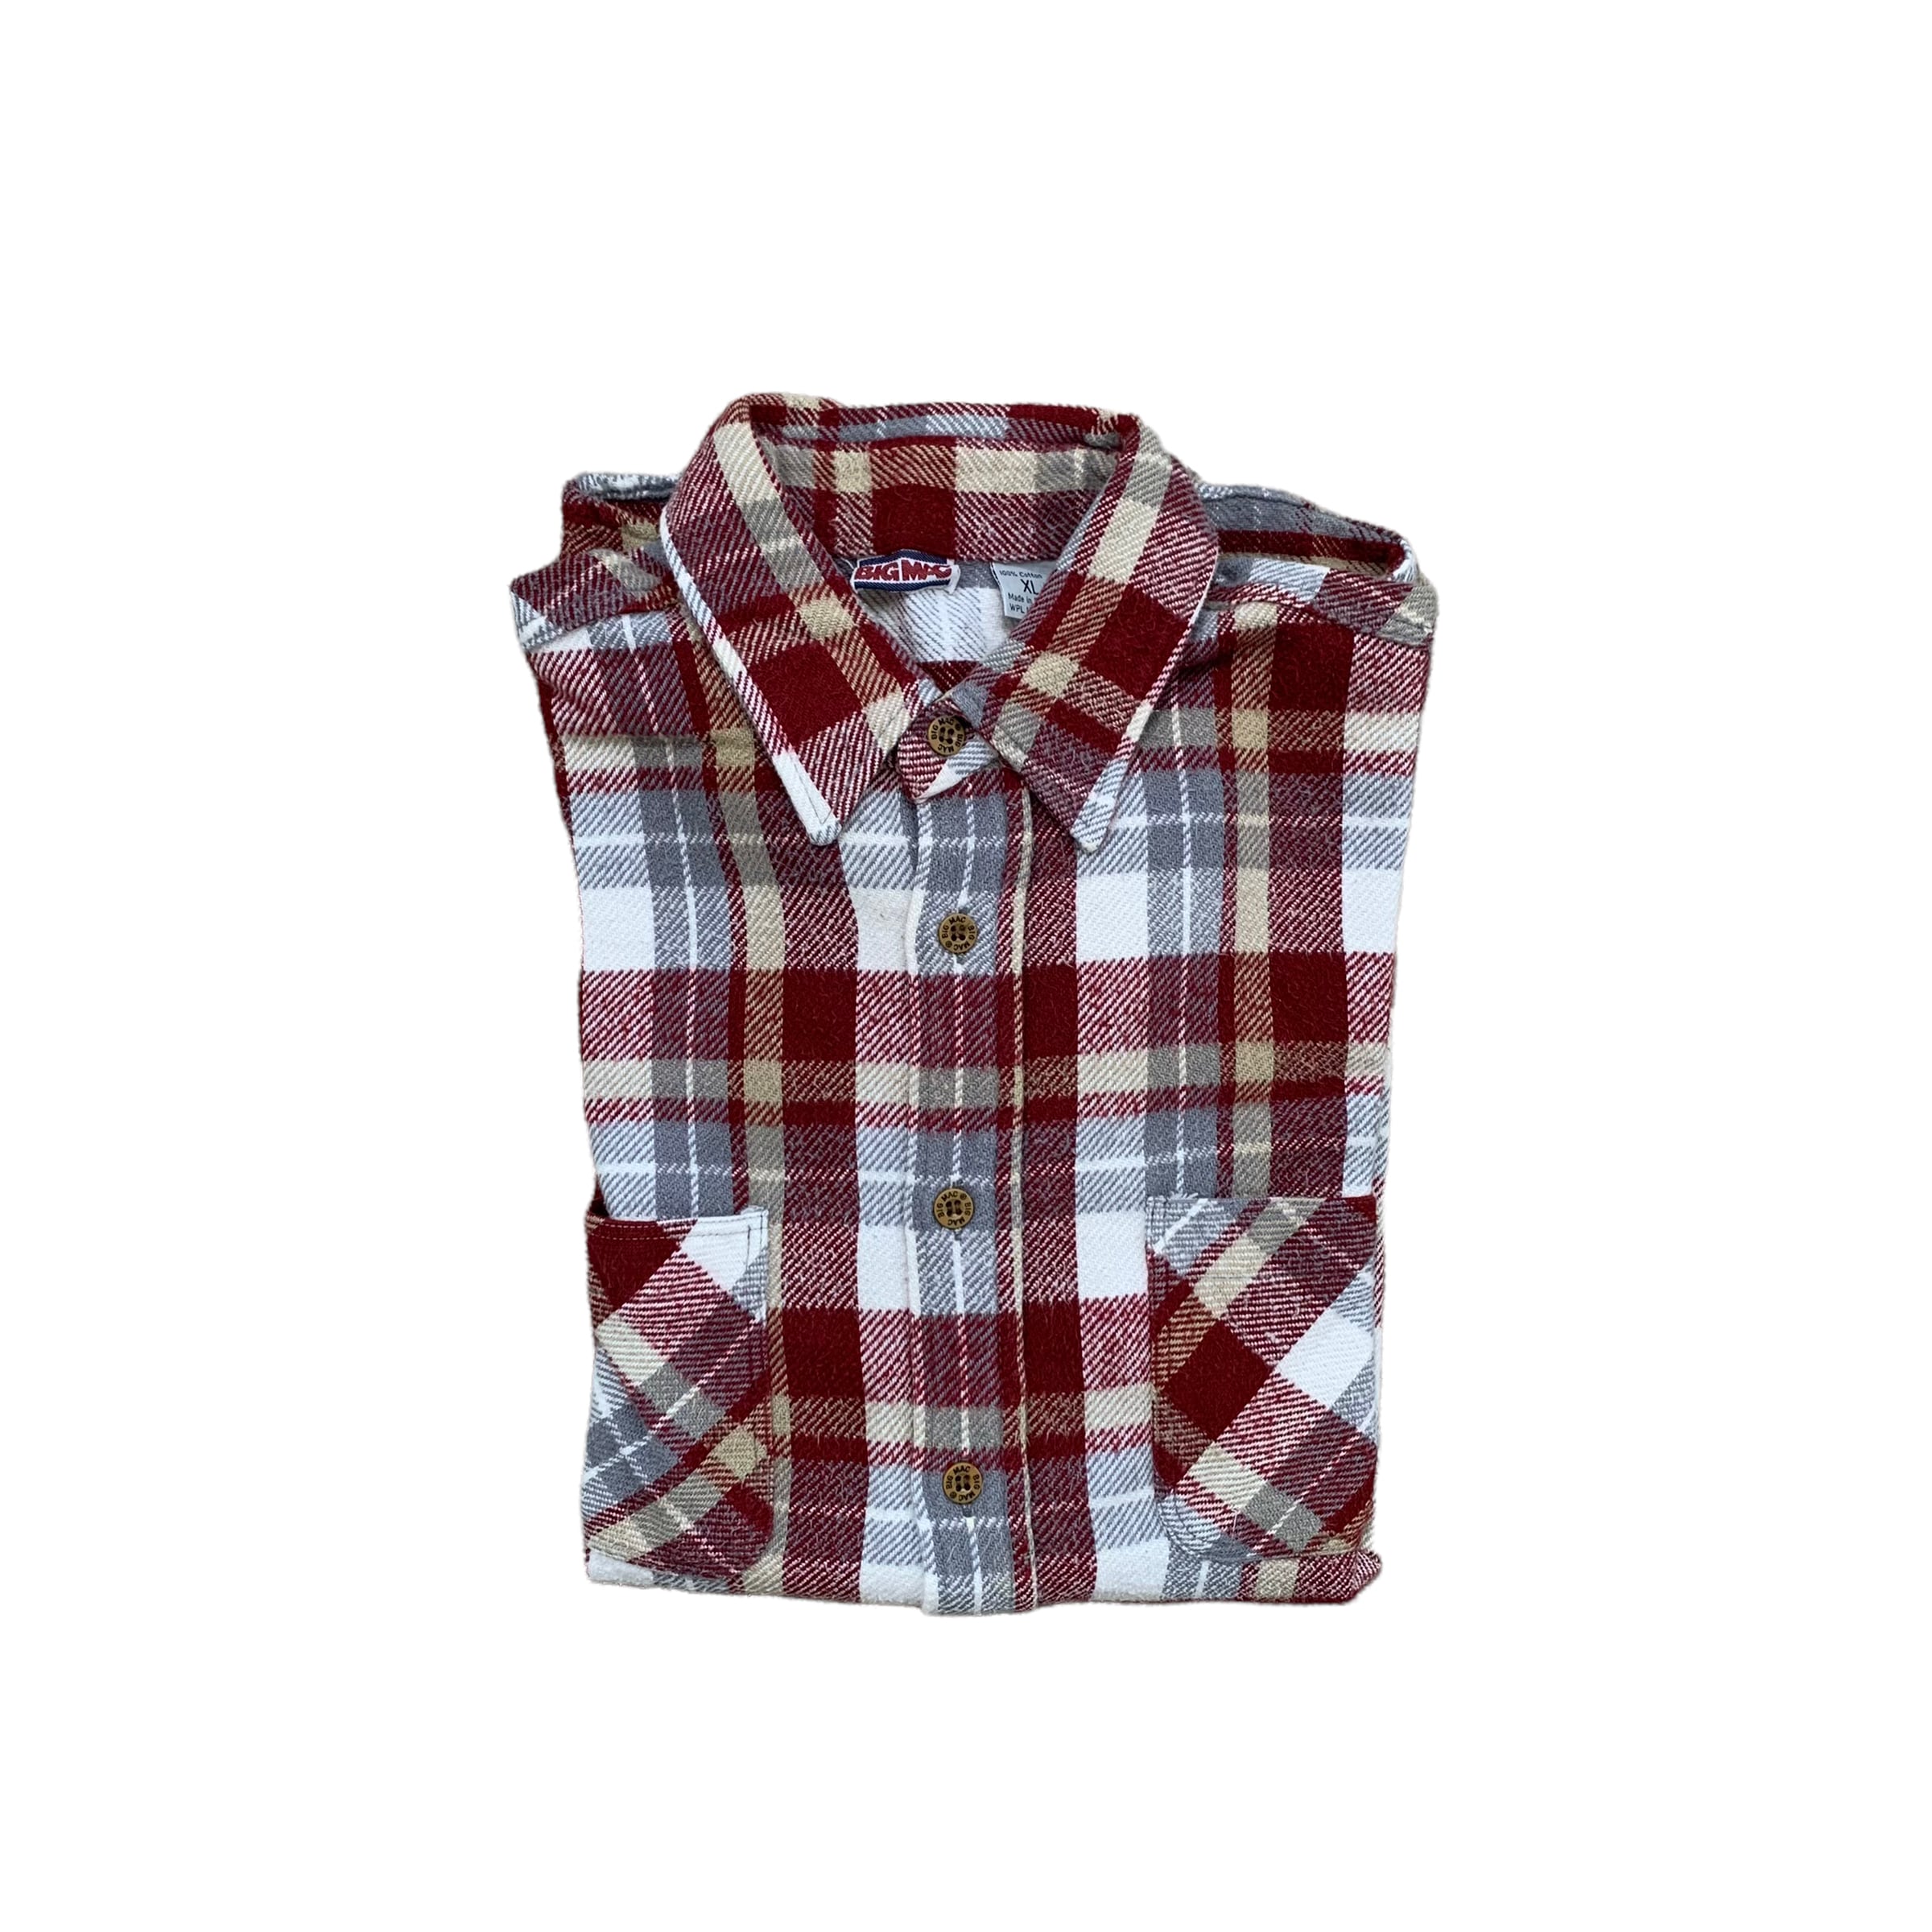 OVY Heavy Flannel Check Shirts ネルシャツ abitur.gnesin-academy.ru